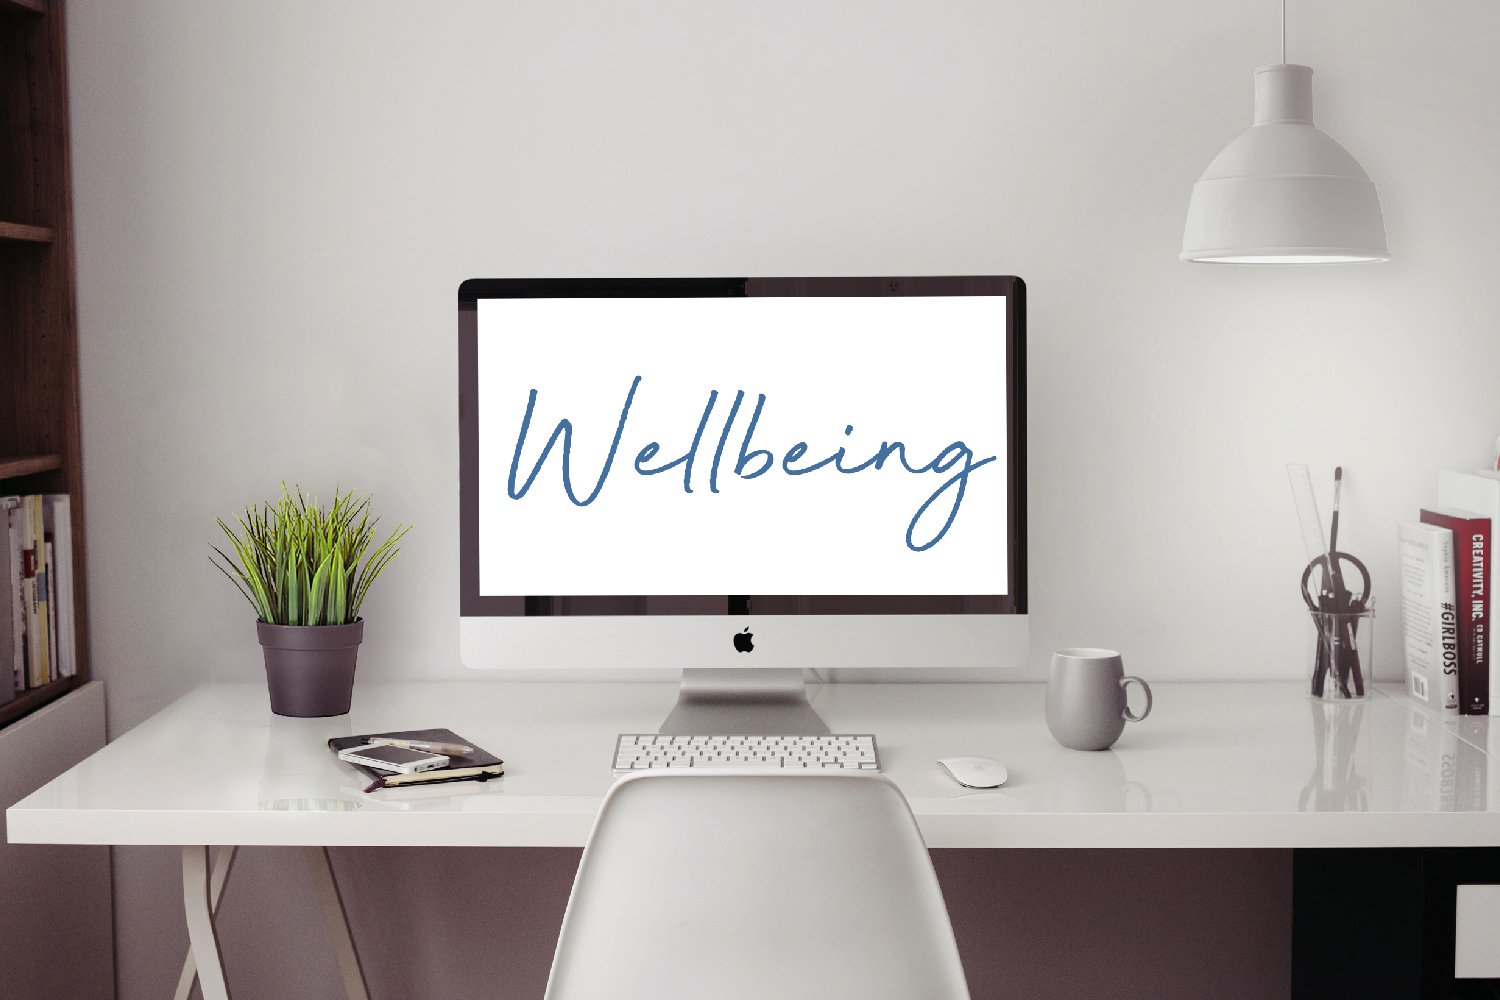 Employee Wellbeing Programs